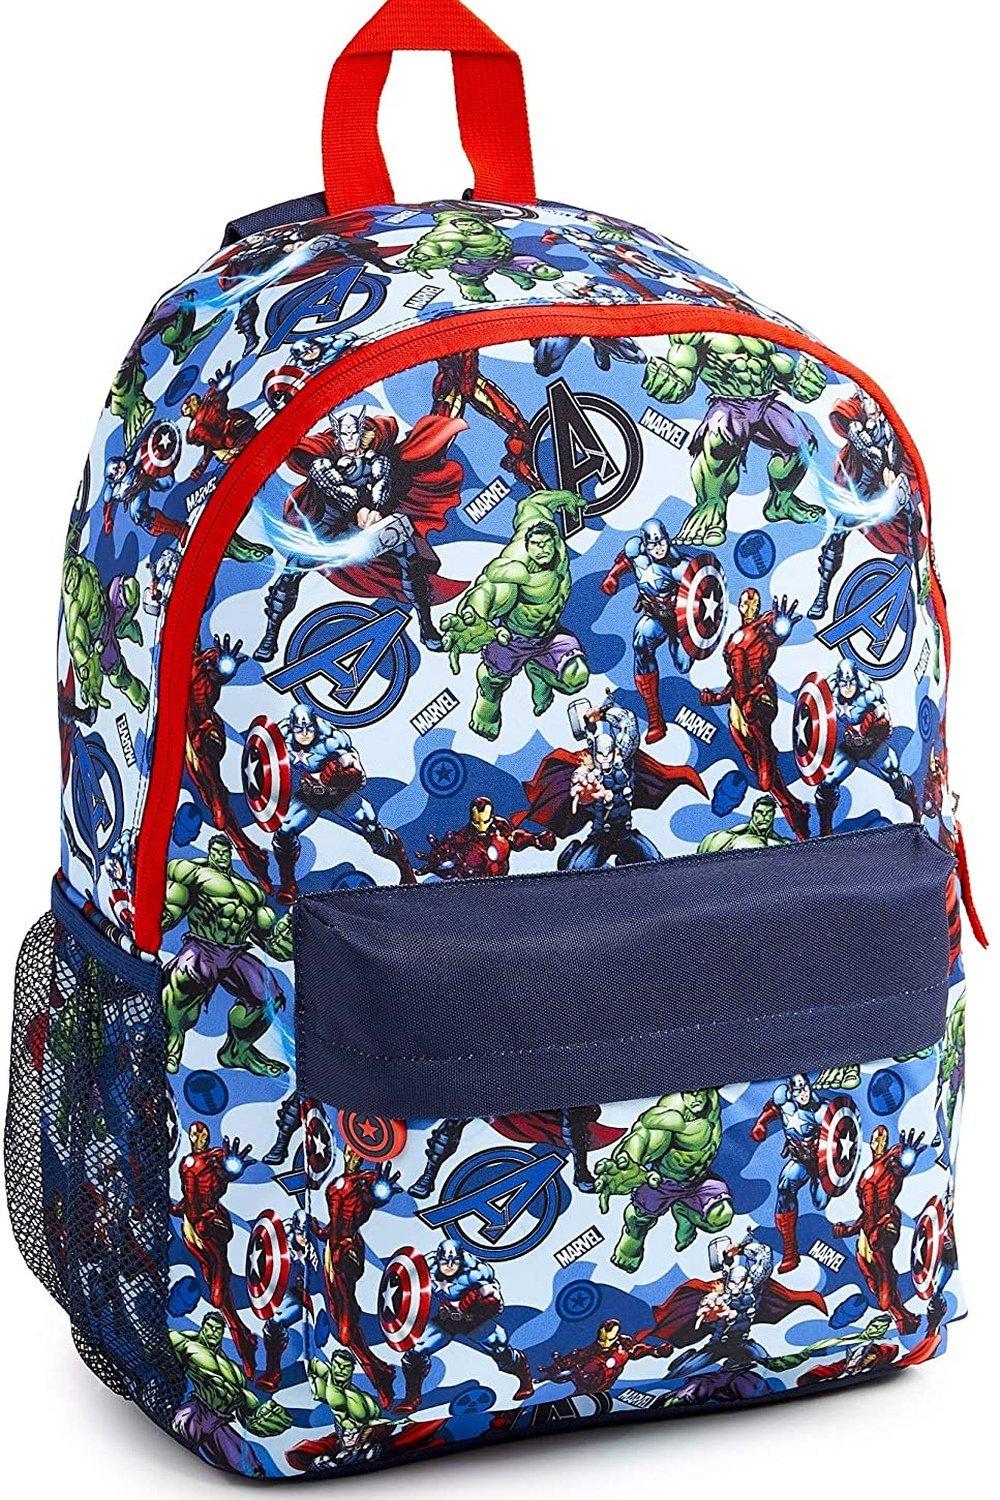 Большой рюкзак Avengers Superheros Marvel, синий детская школьная сумка для детского сада рюкзак для мальчиков с мультипликационным рисунком милый водонепроницаемый рюкзак для начально